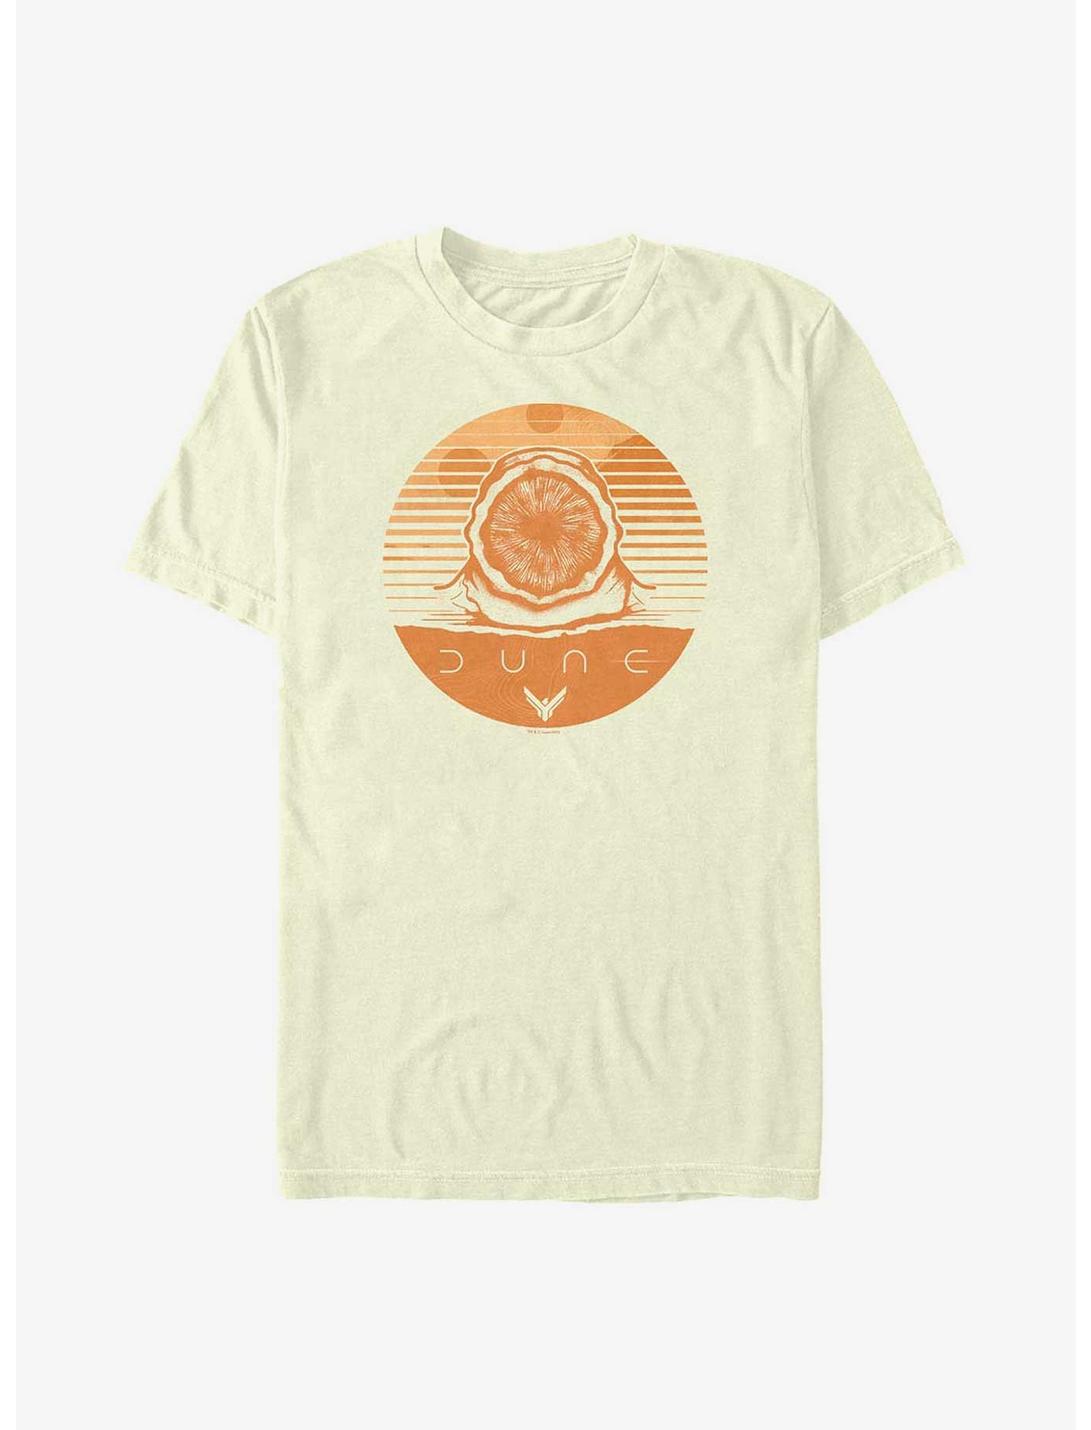 Dune Arrakis Stamp T-Shirt, NATURAL, hi-res